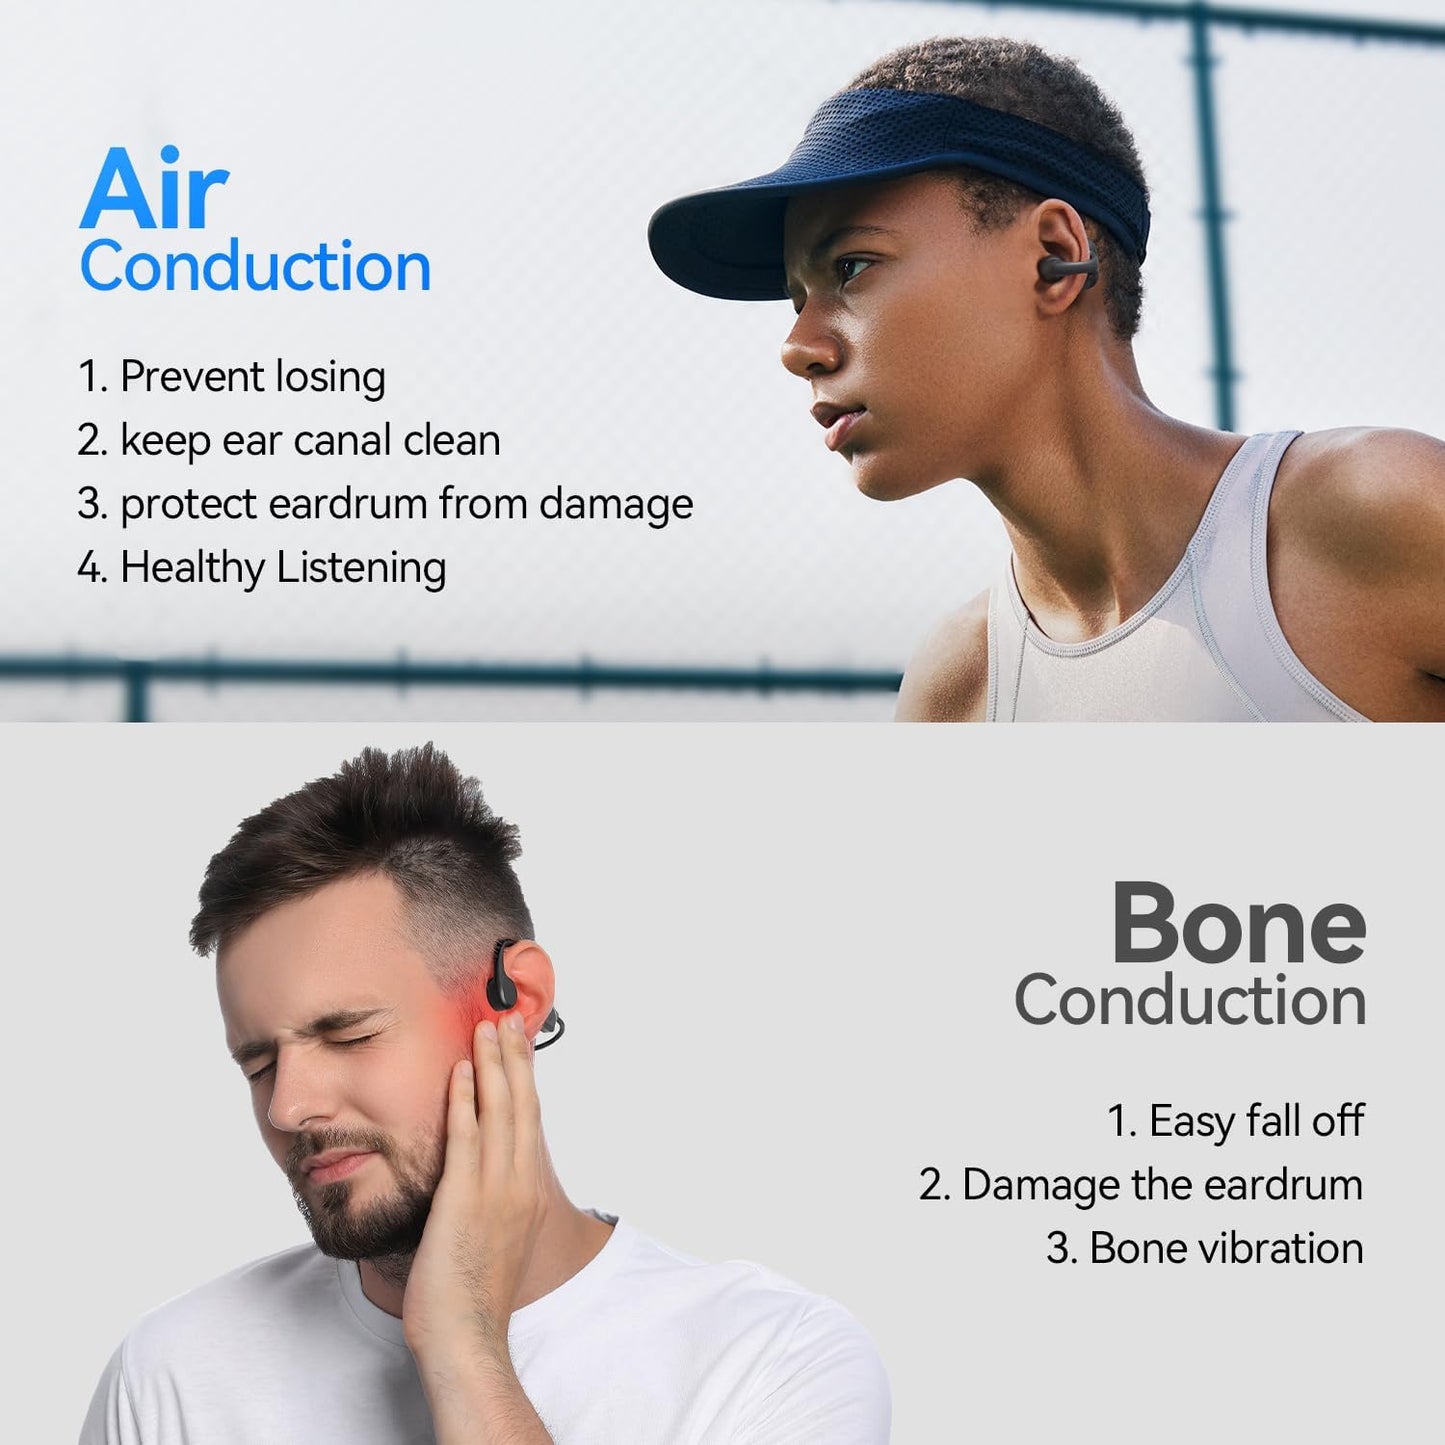 Z50SPRO ear clip Bluetooth earphone Open true wireless sports earphone ultra-long life music earphone